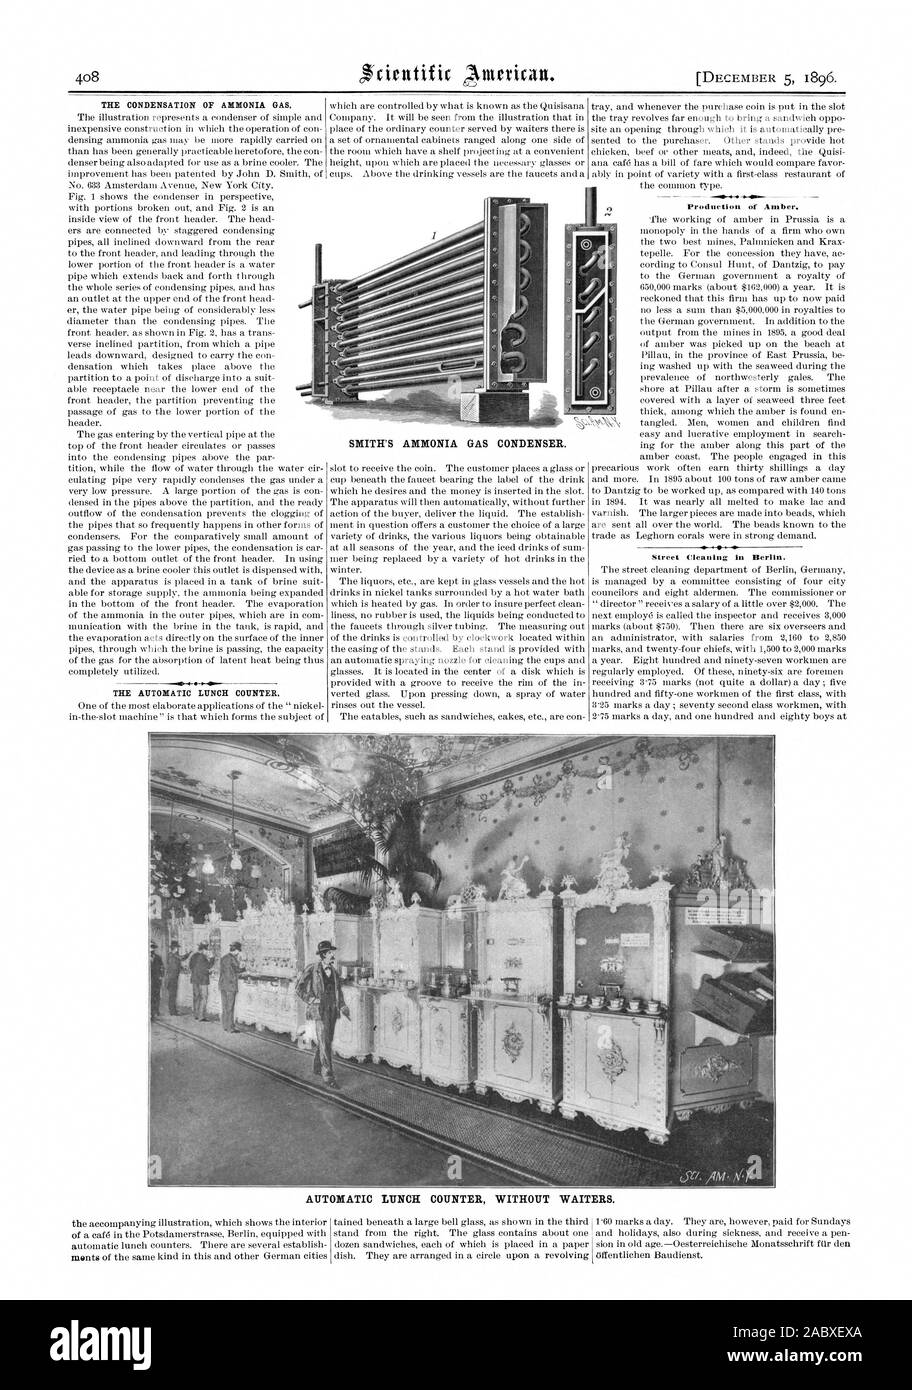 La condensación del gas amoníaco. El contador automático de almuerzo. Producción de ámbar. Limpieza de Calles en Berlín. Contador AUTOMÁTICO DE ALMUERZO SIN camareros., Scientific American, 1896-12-05 Foto de stock